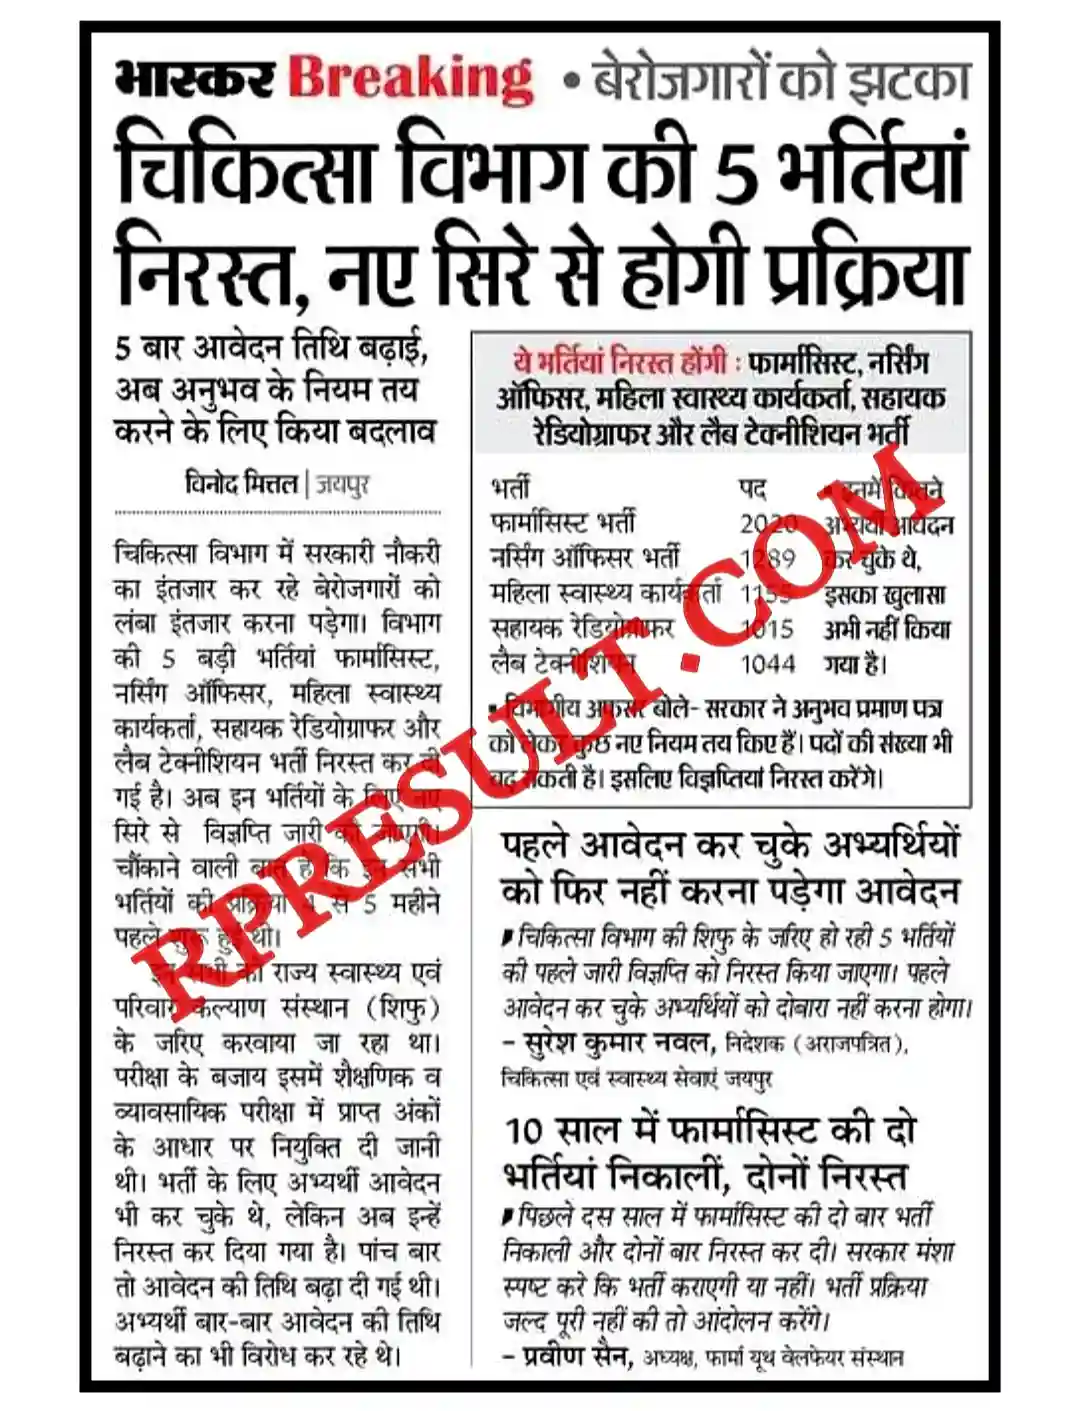 Rajasthan 5 Recruitment Cancelled 2023 राजस्थान चिकित्सा विभाग में 5 भर्तियां कैंसिल, नए सिरे से होंगी शुरू